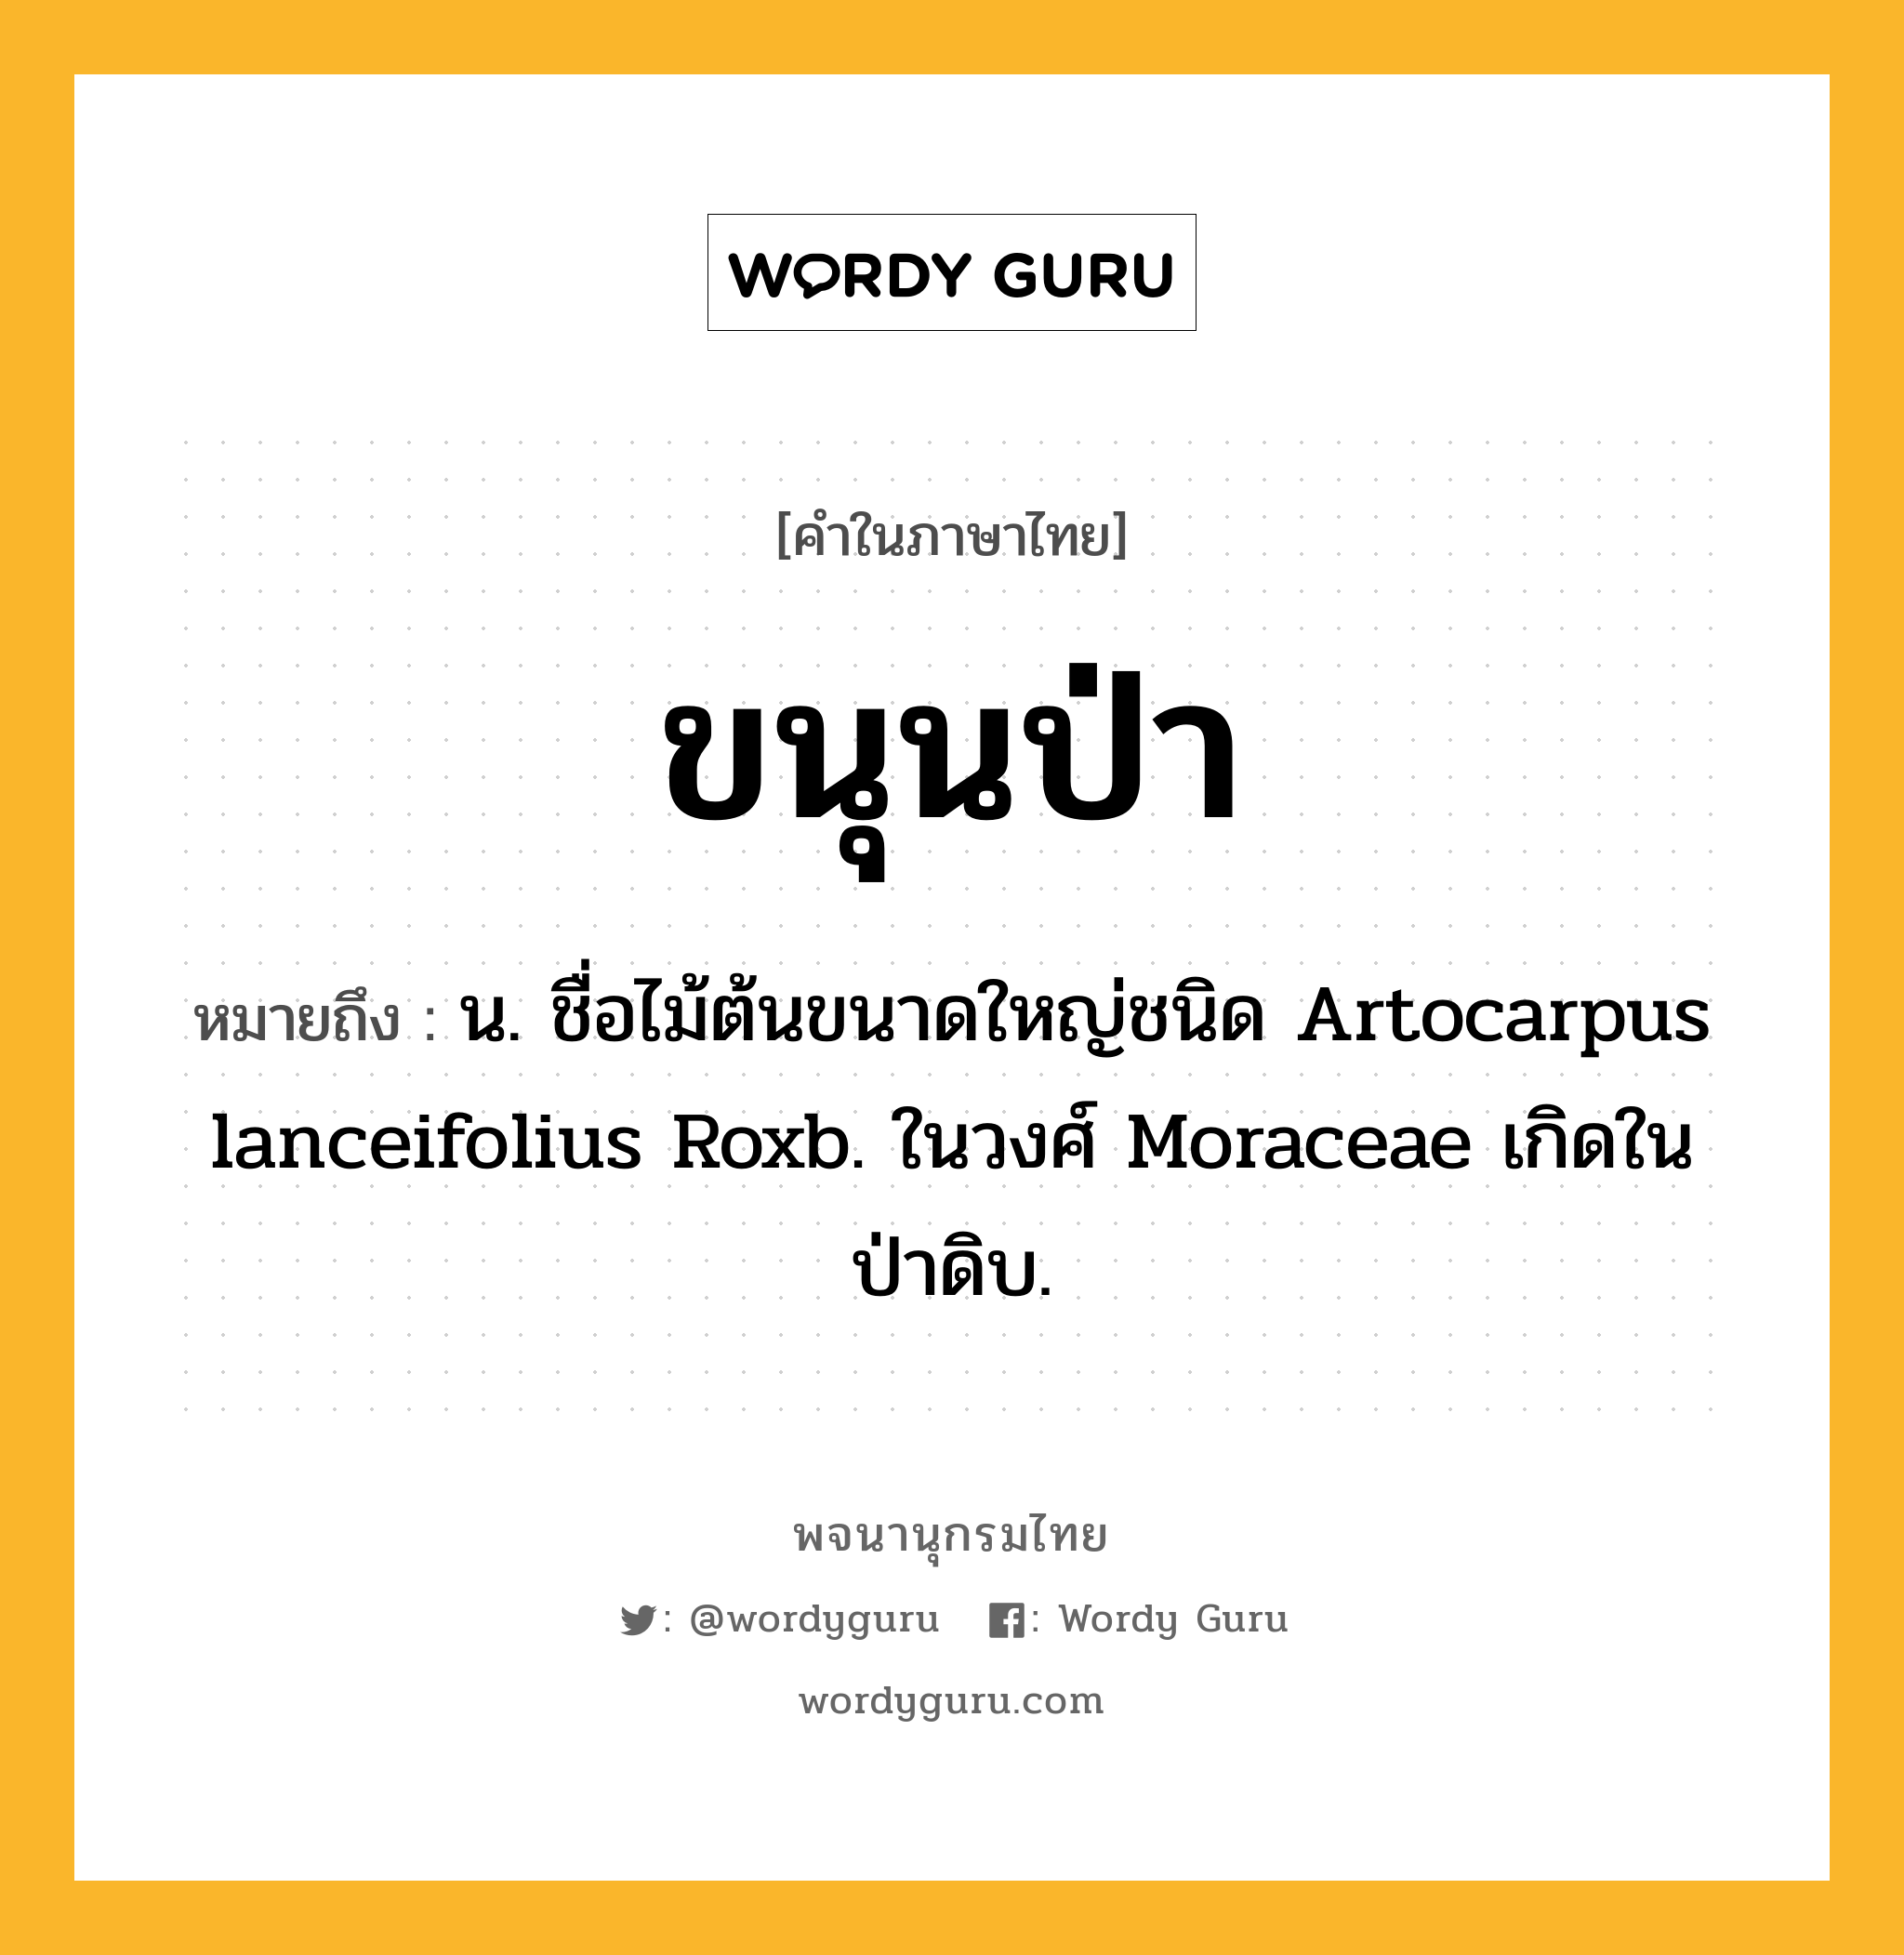 ขนุนป่า หมายถึงอะไร?, คำในภาษาไทย ขนุนป่า หมายถึง น. ชื่อไม้ต้นขนาดใหญ่ชนิด Artocarpus lanceifolius Roxb. ในวงศ์ Moraceae เกิดในป่าดิบ.